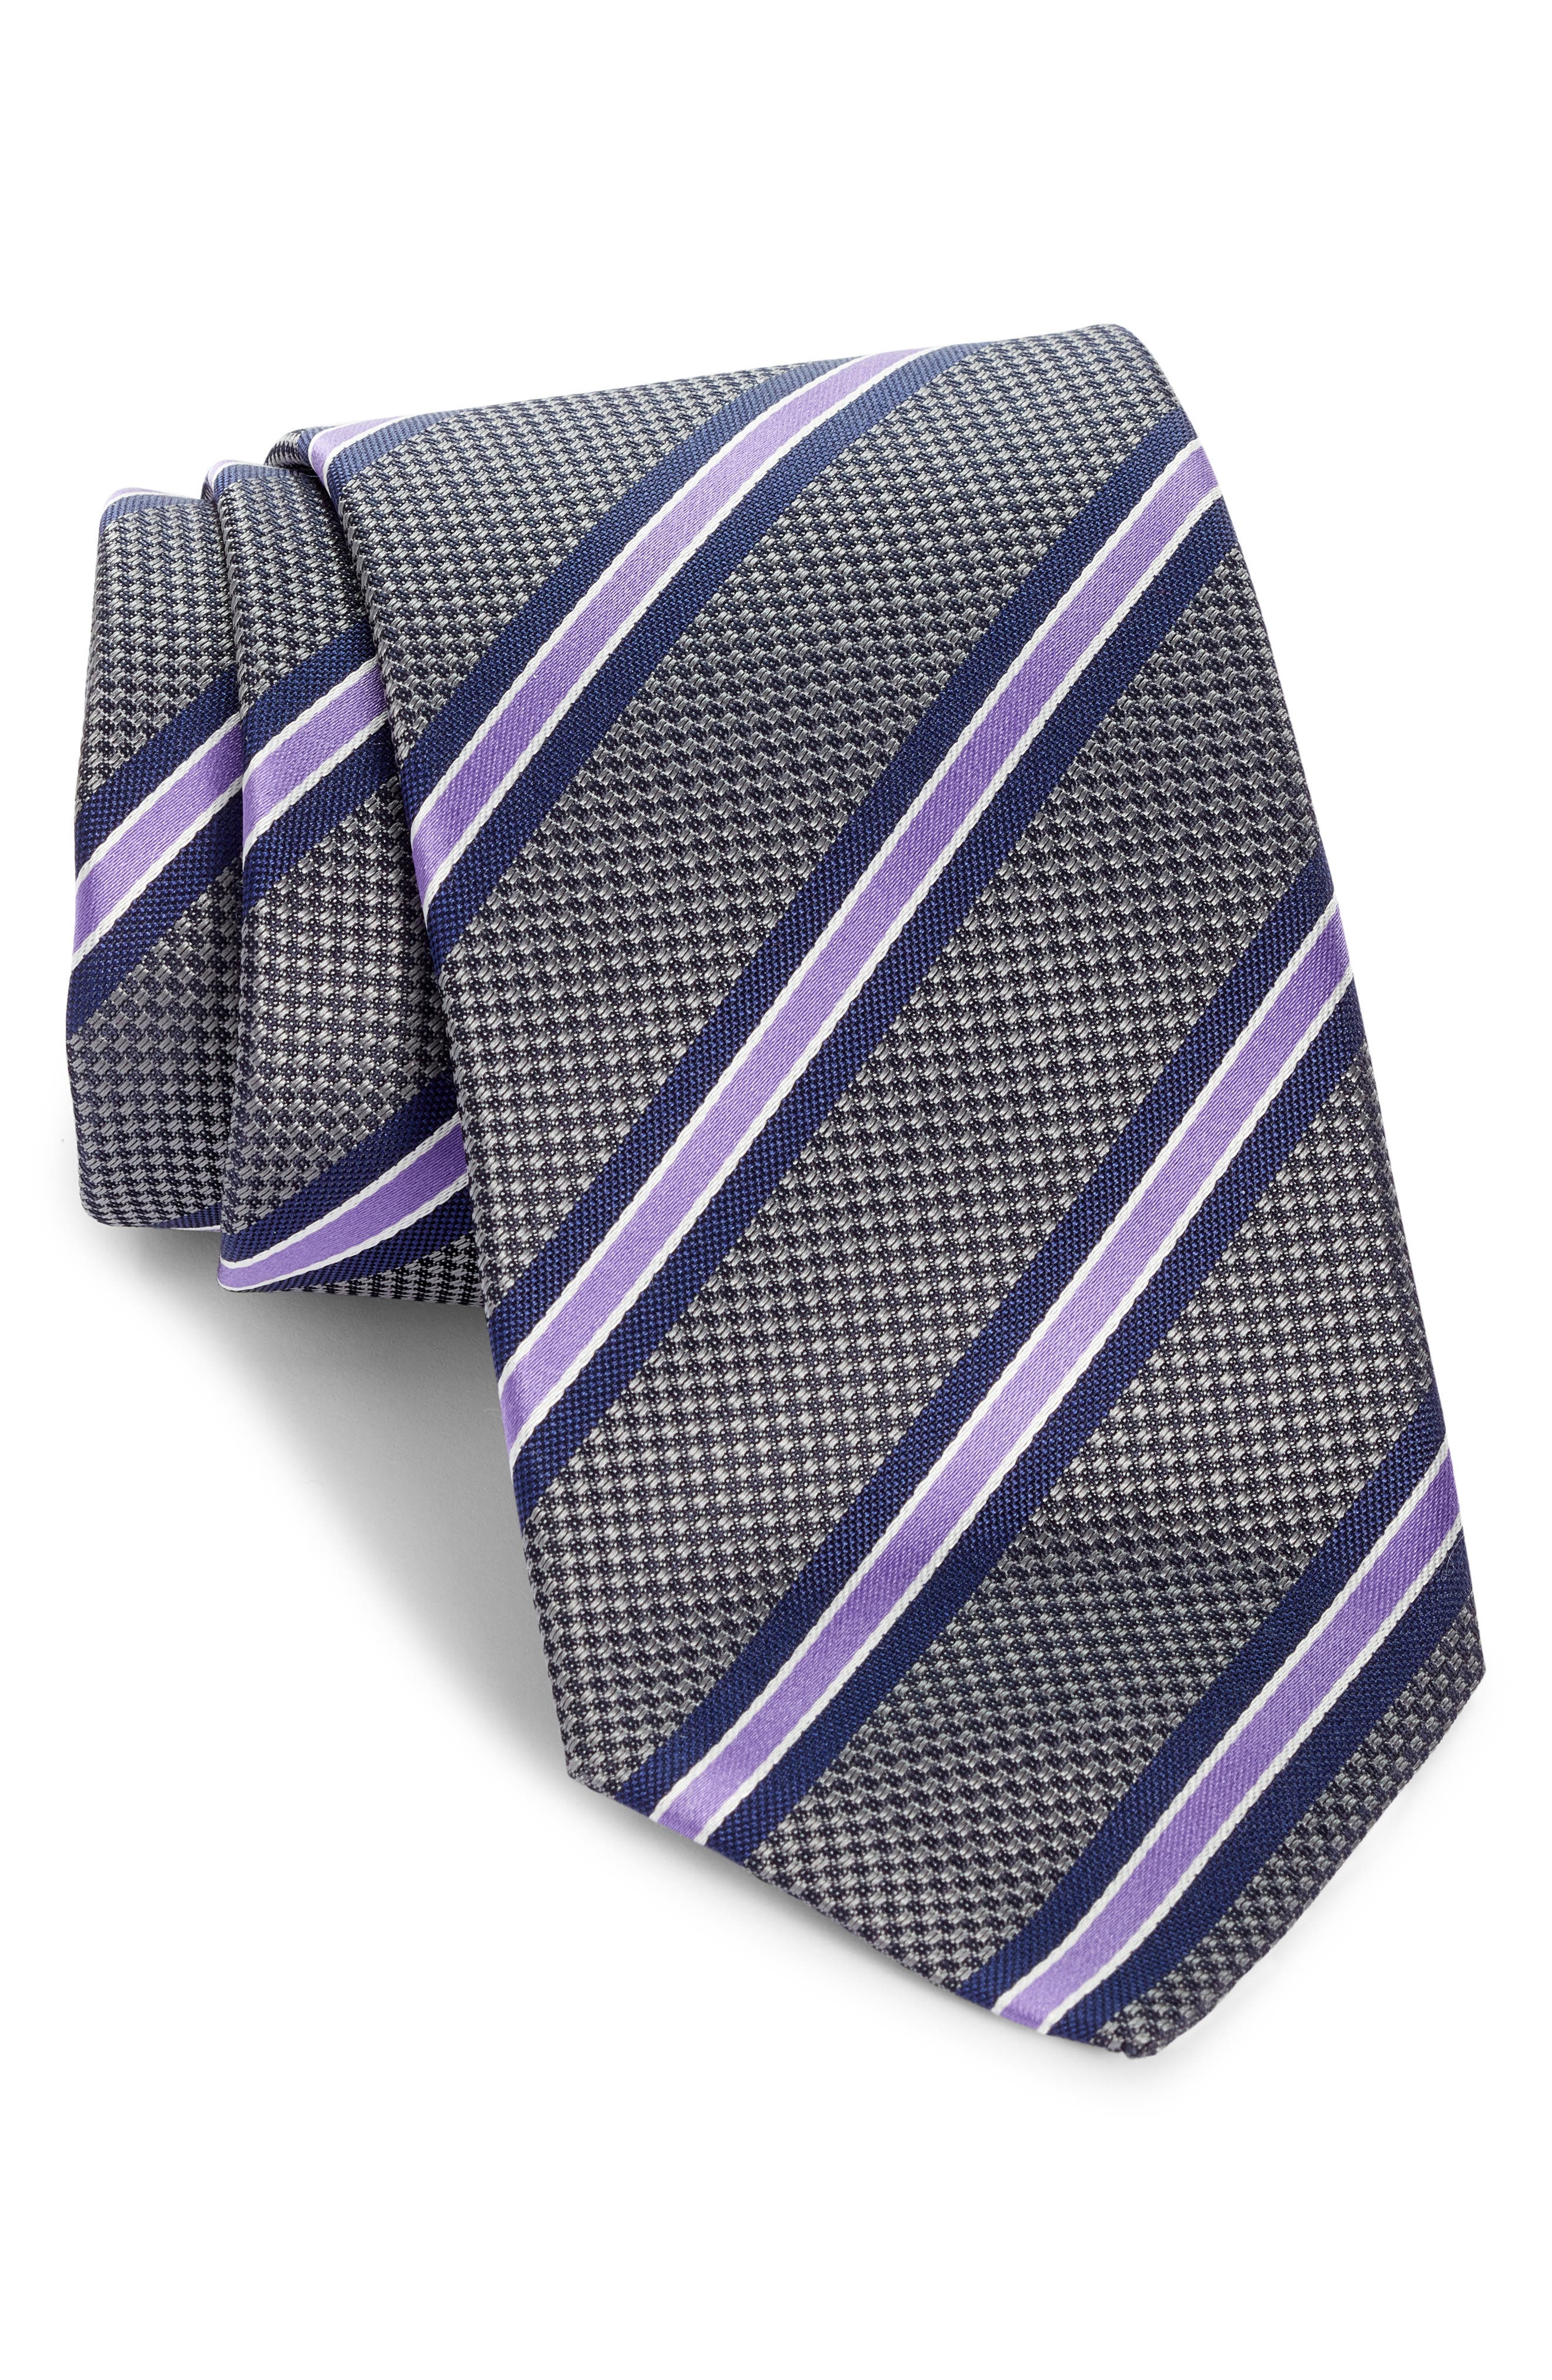 New Vintage Wedding Dusky Pink Stripe Skinny Tie & Pocket Square Set UK. 